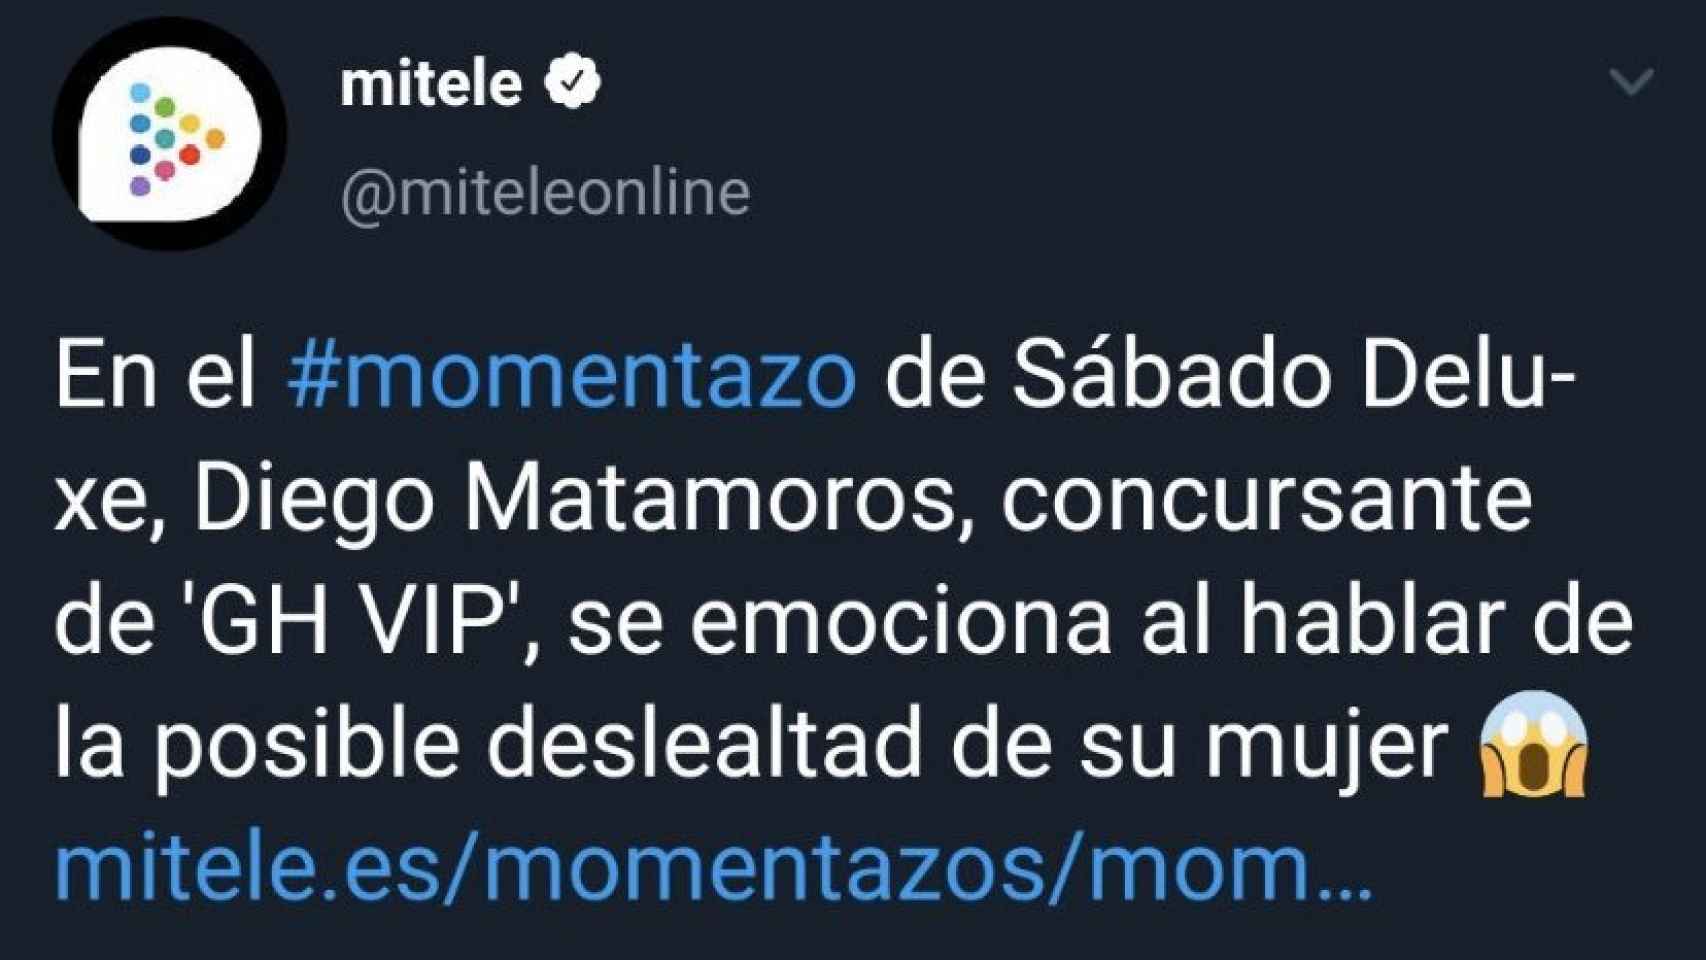 Captura del tweet que describía a Diego Matamoros como concursante de 'GH VIP'.